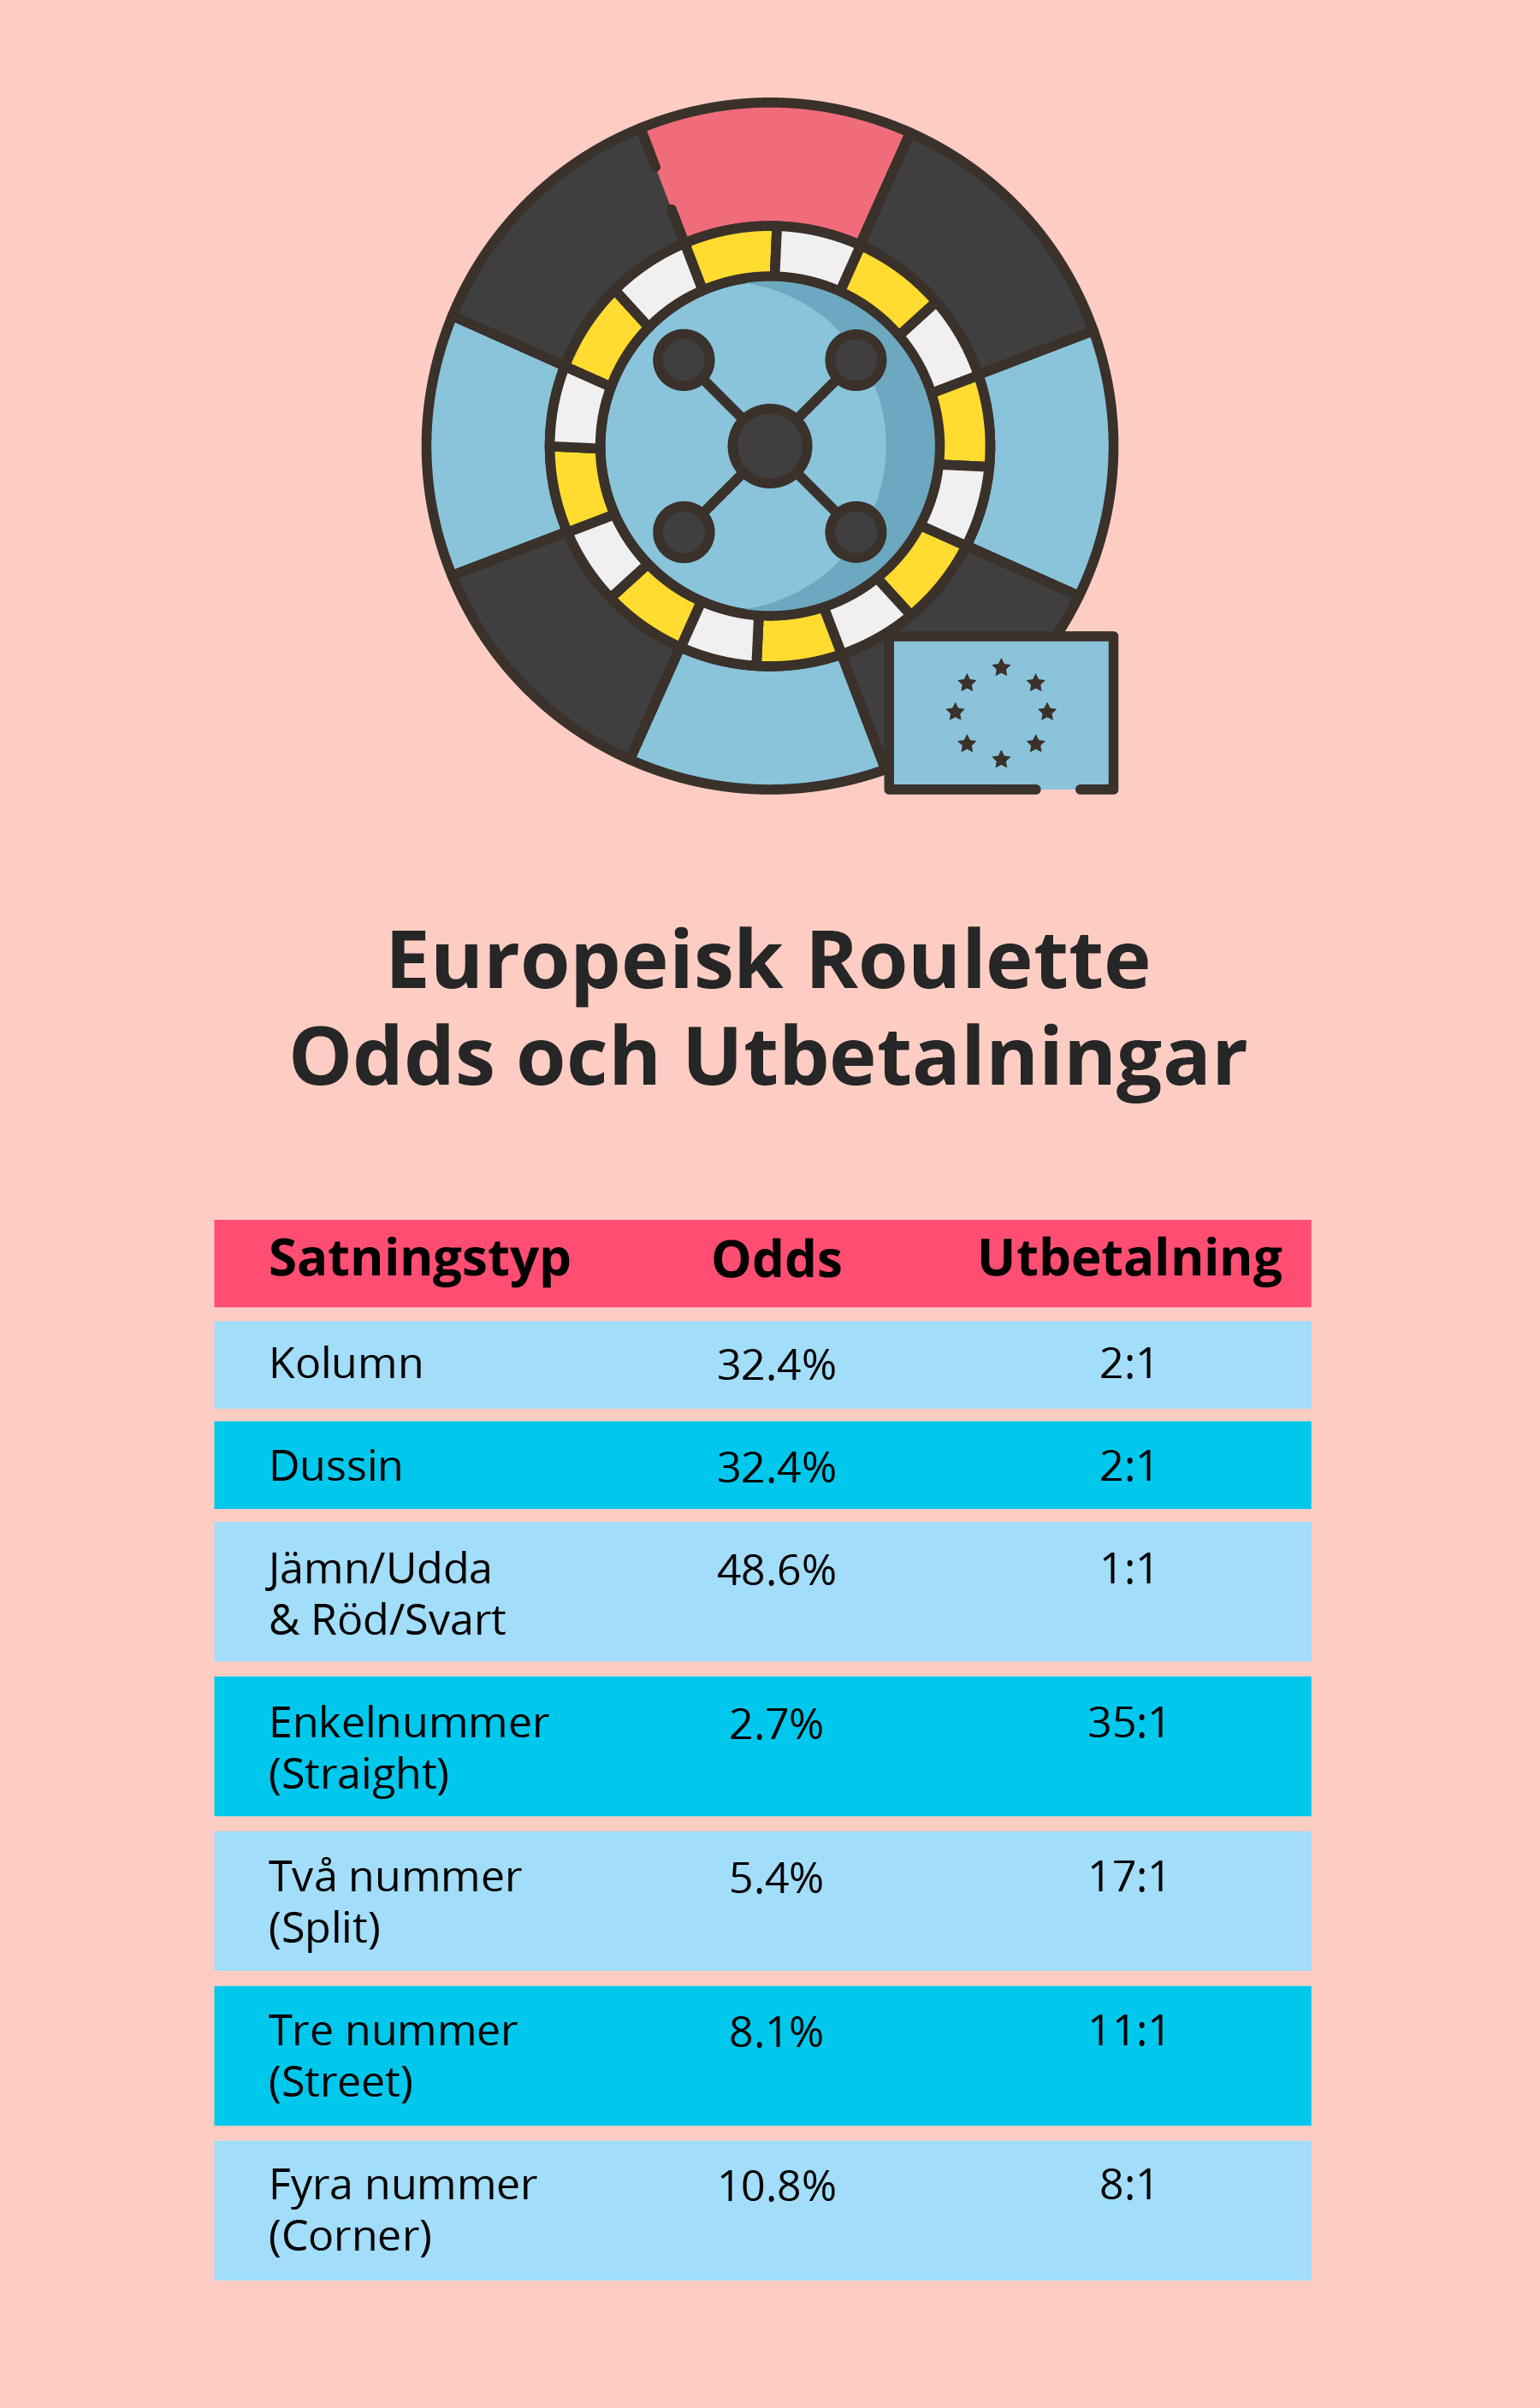 Odds och utbetalningar i europeisk roulette.